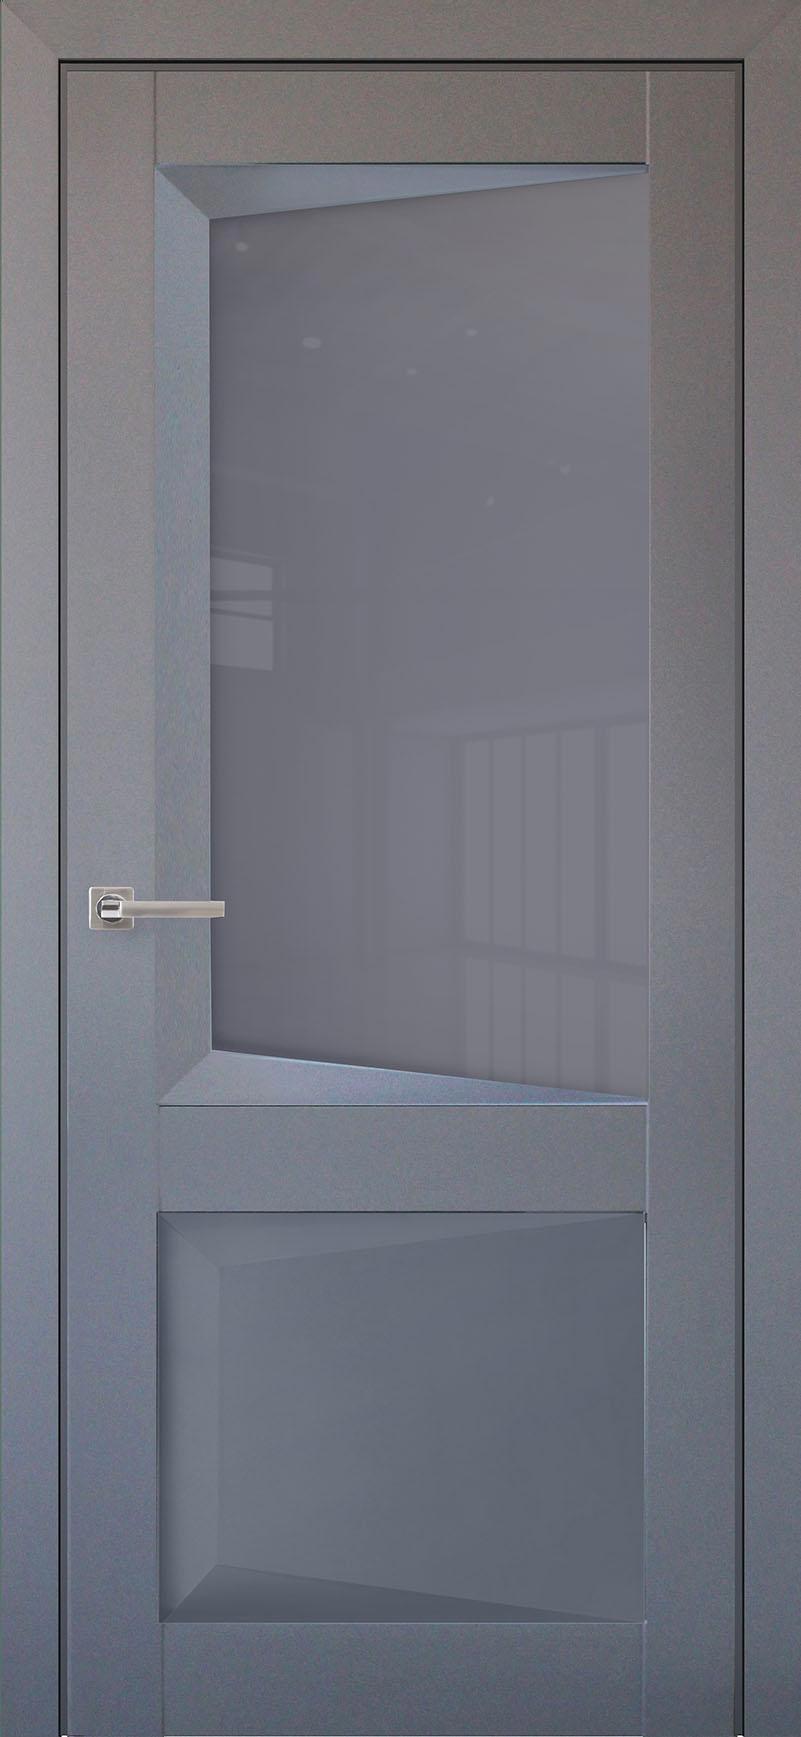 90903212 Межкомнатная дверь Перфекто 108 остеклённая без замка и петель в комплекте 200x60см серый STLM-0420038 UBERTURE